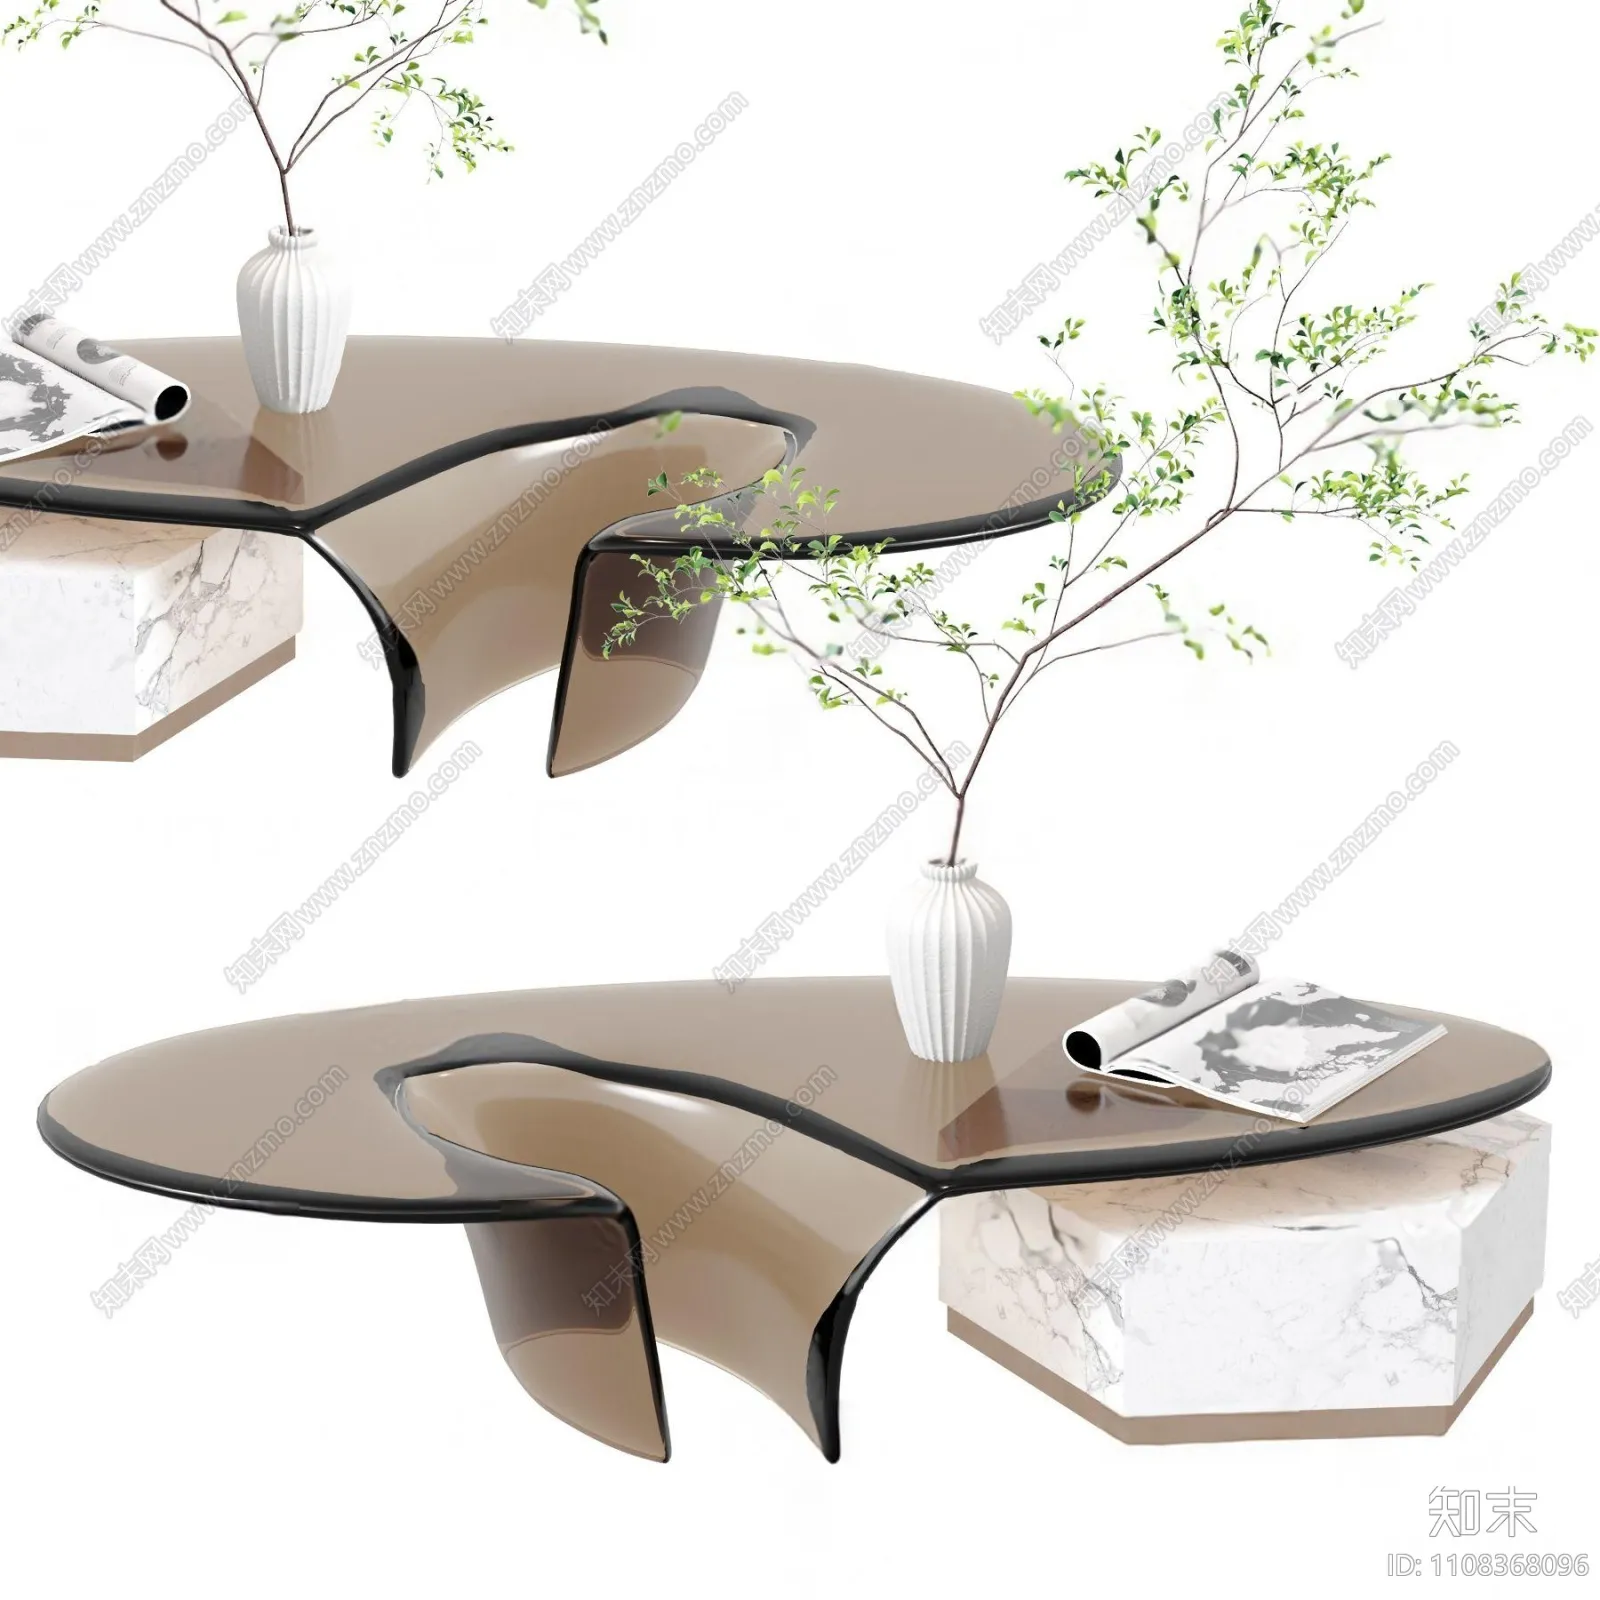 TEA TABLES 3D MODELS – 011 – PRO